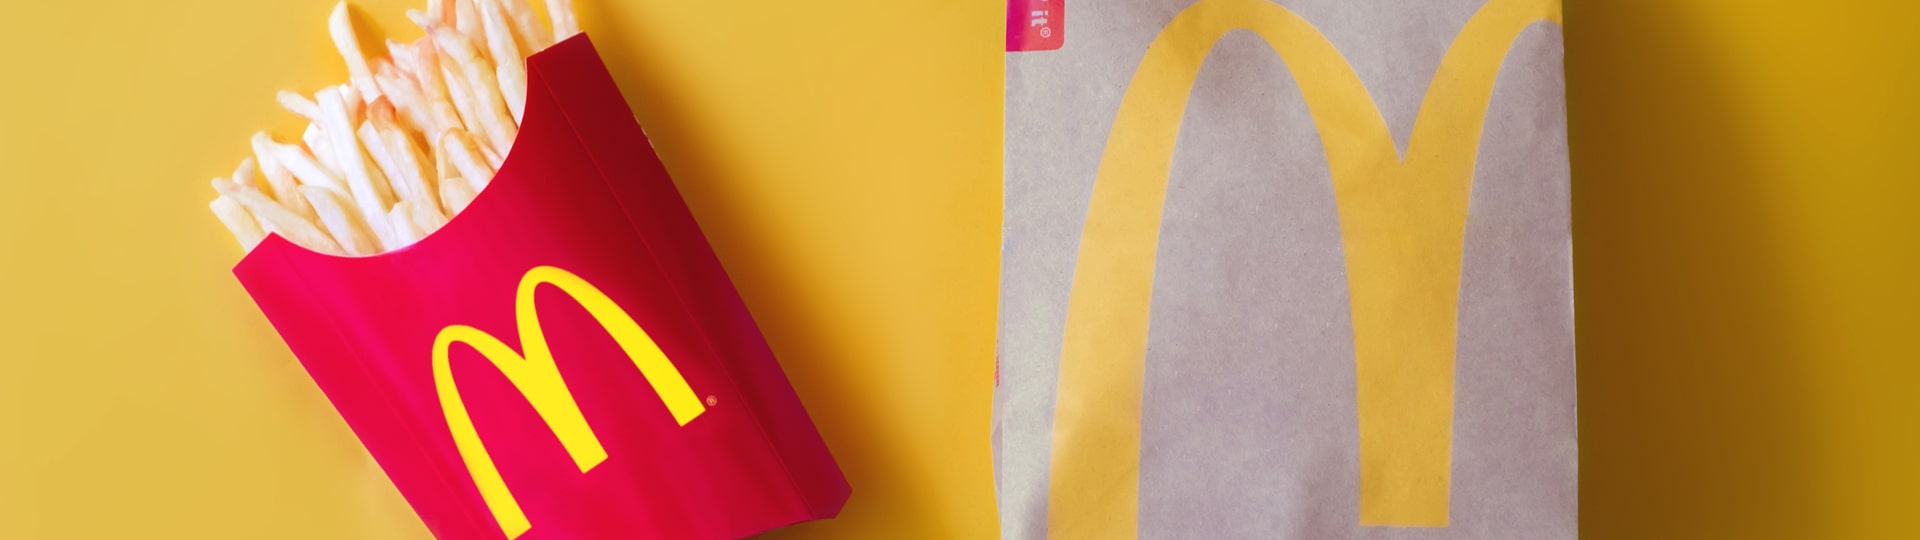 McDonald's zvýšil čtvrtletní zisk, tržby překonaly očekávání analytiků